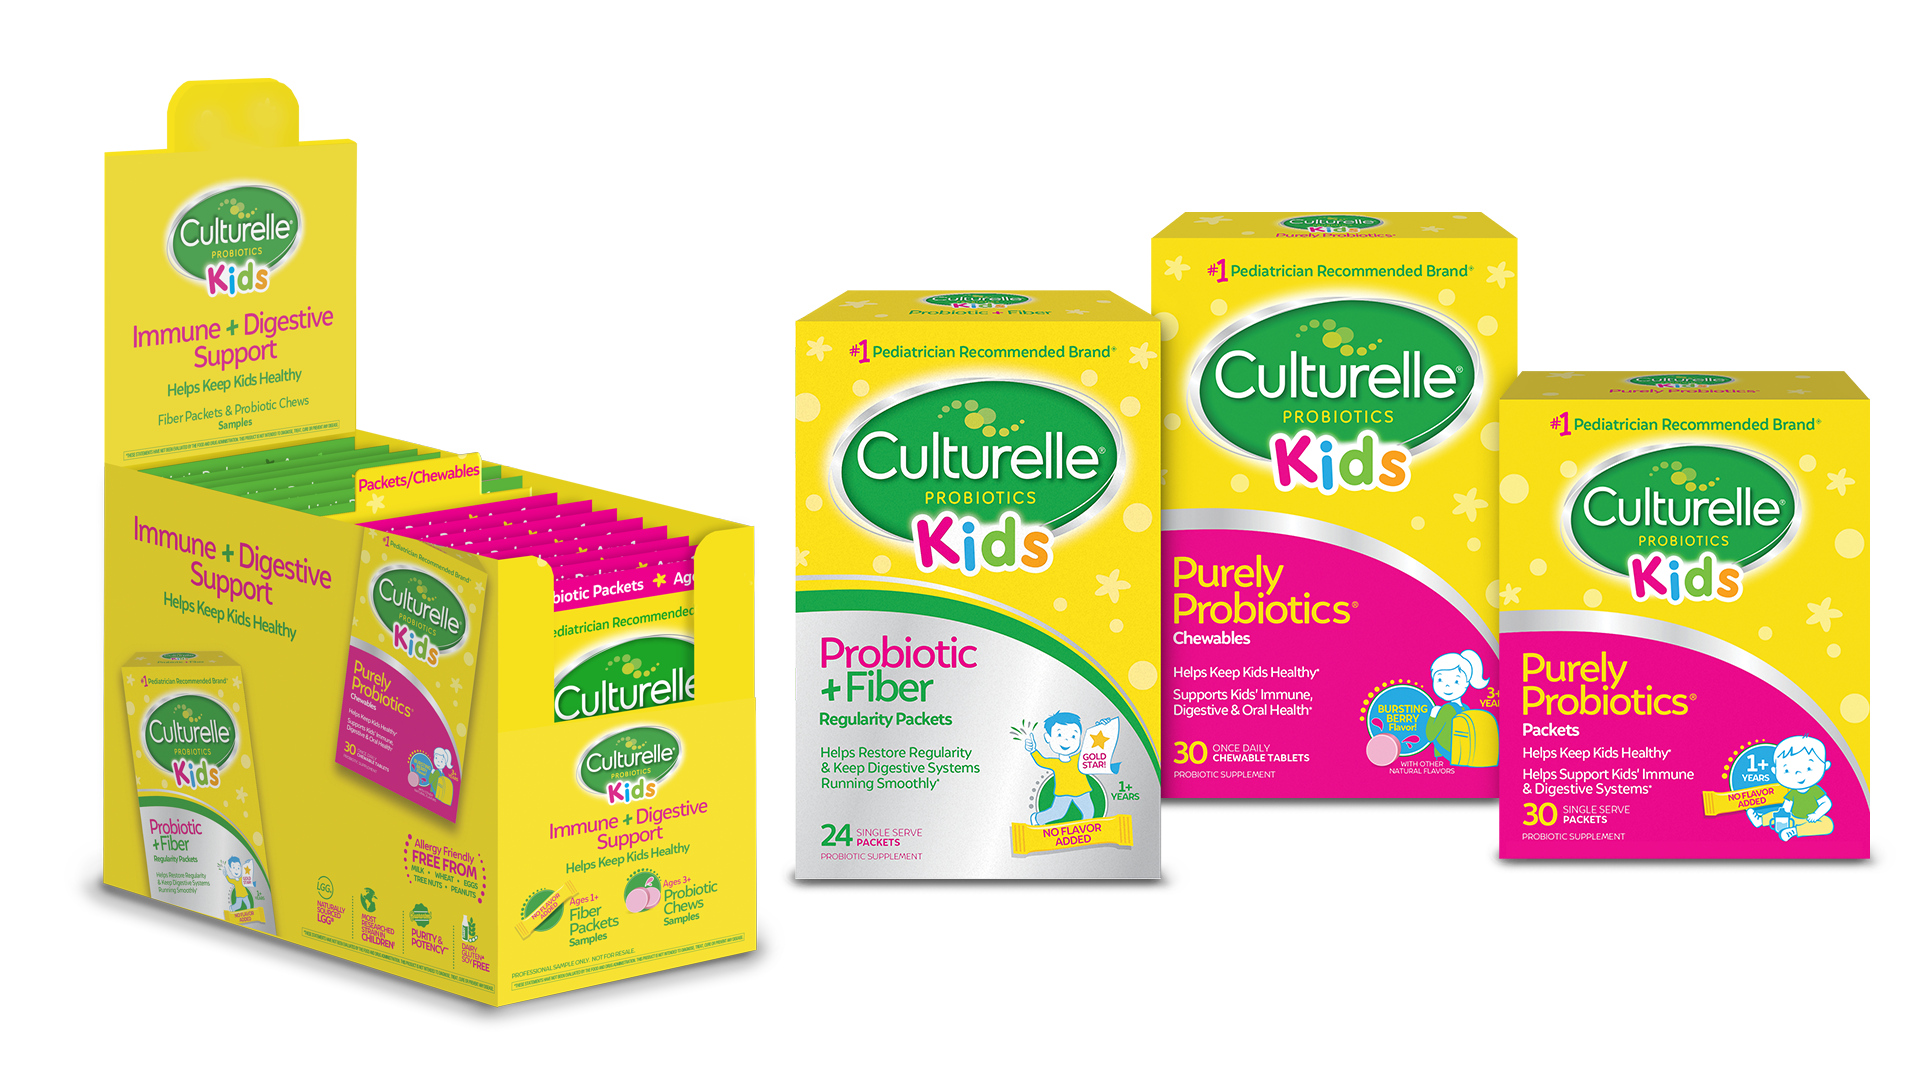 Culturelle Kids products